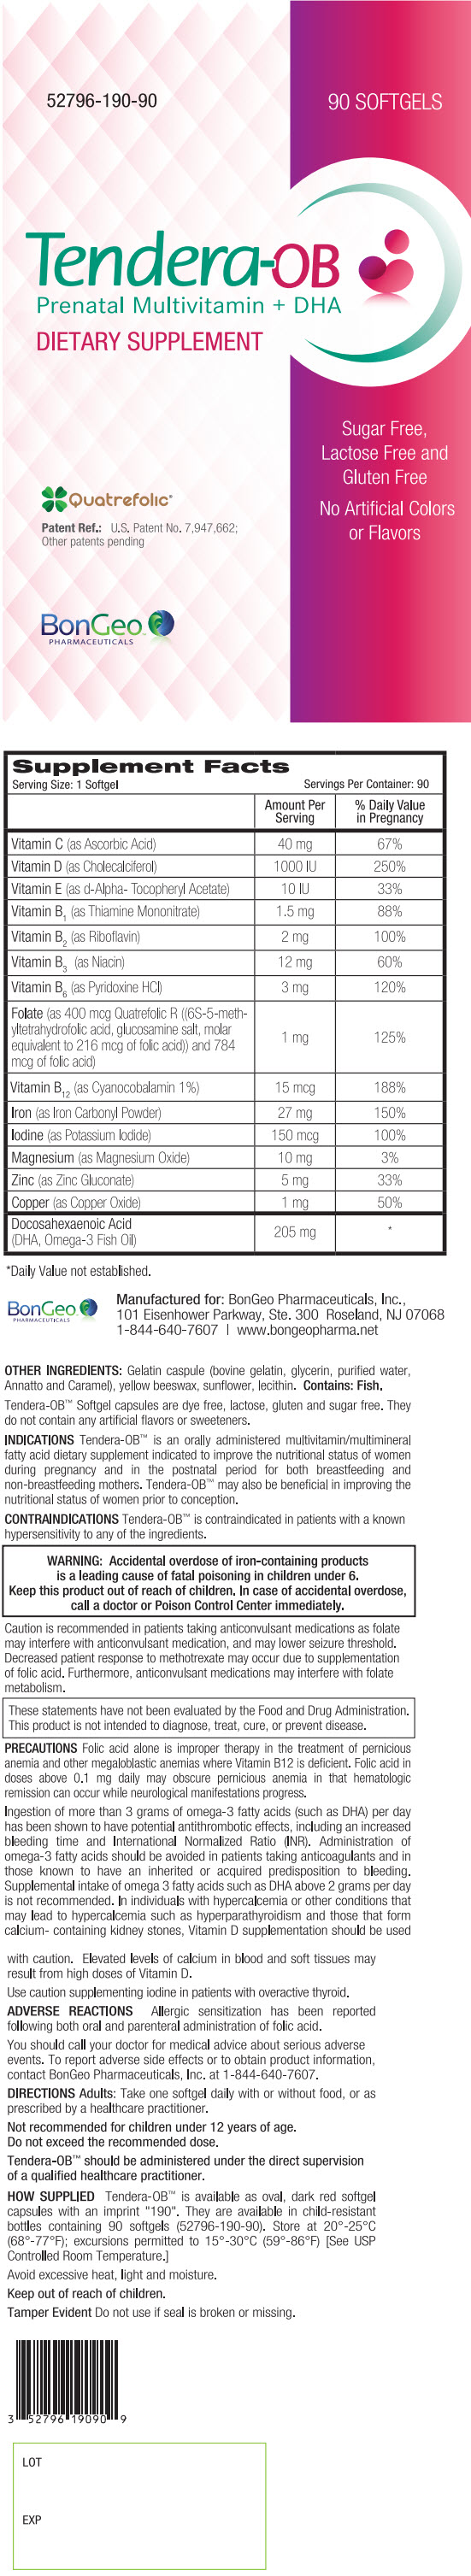 PRINCIPAL DISPLAY PANEL - 90 Softgel Bottle Label